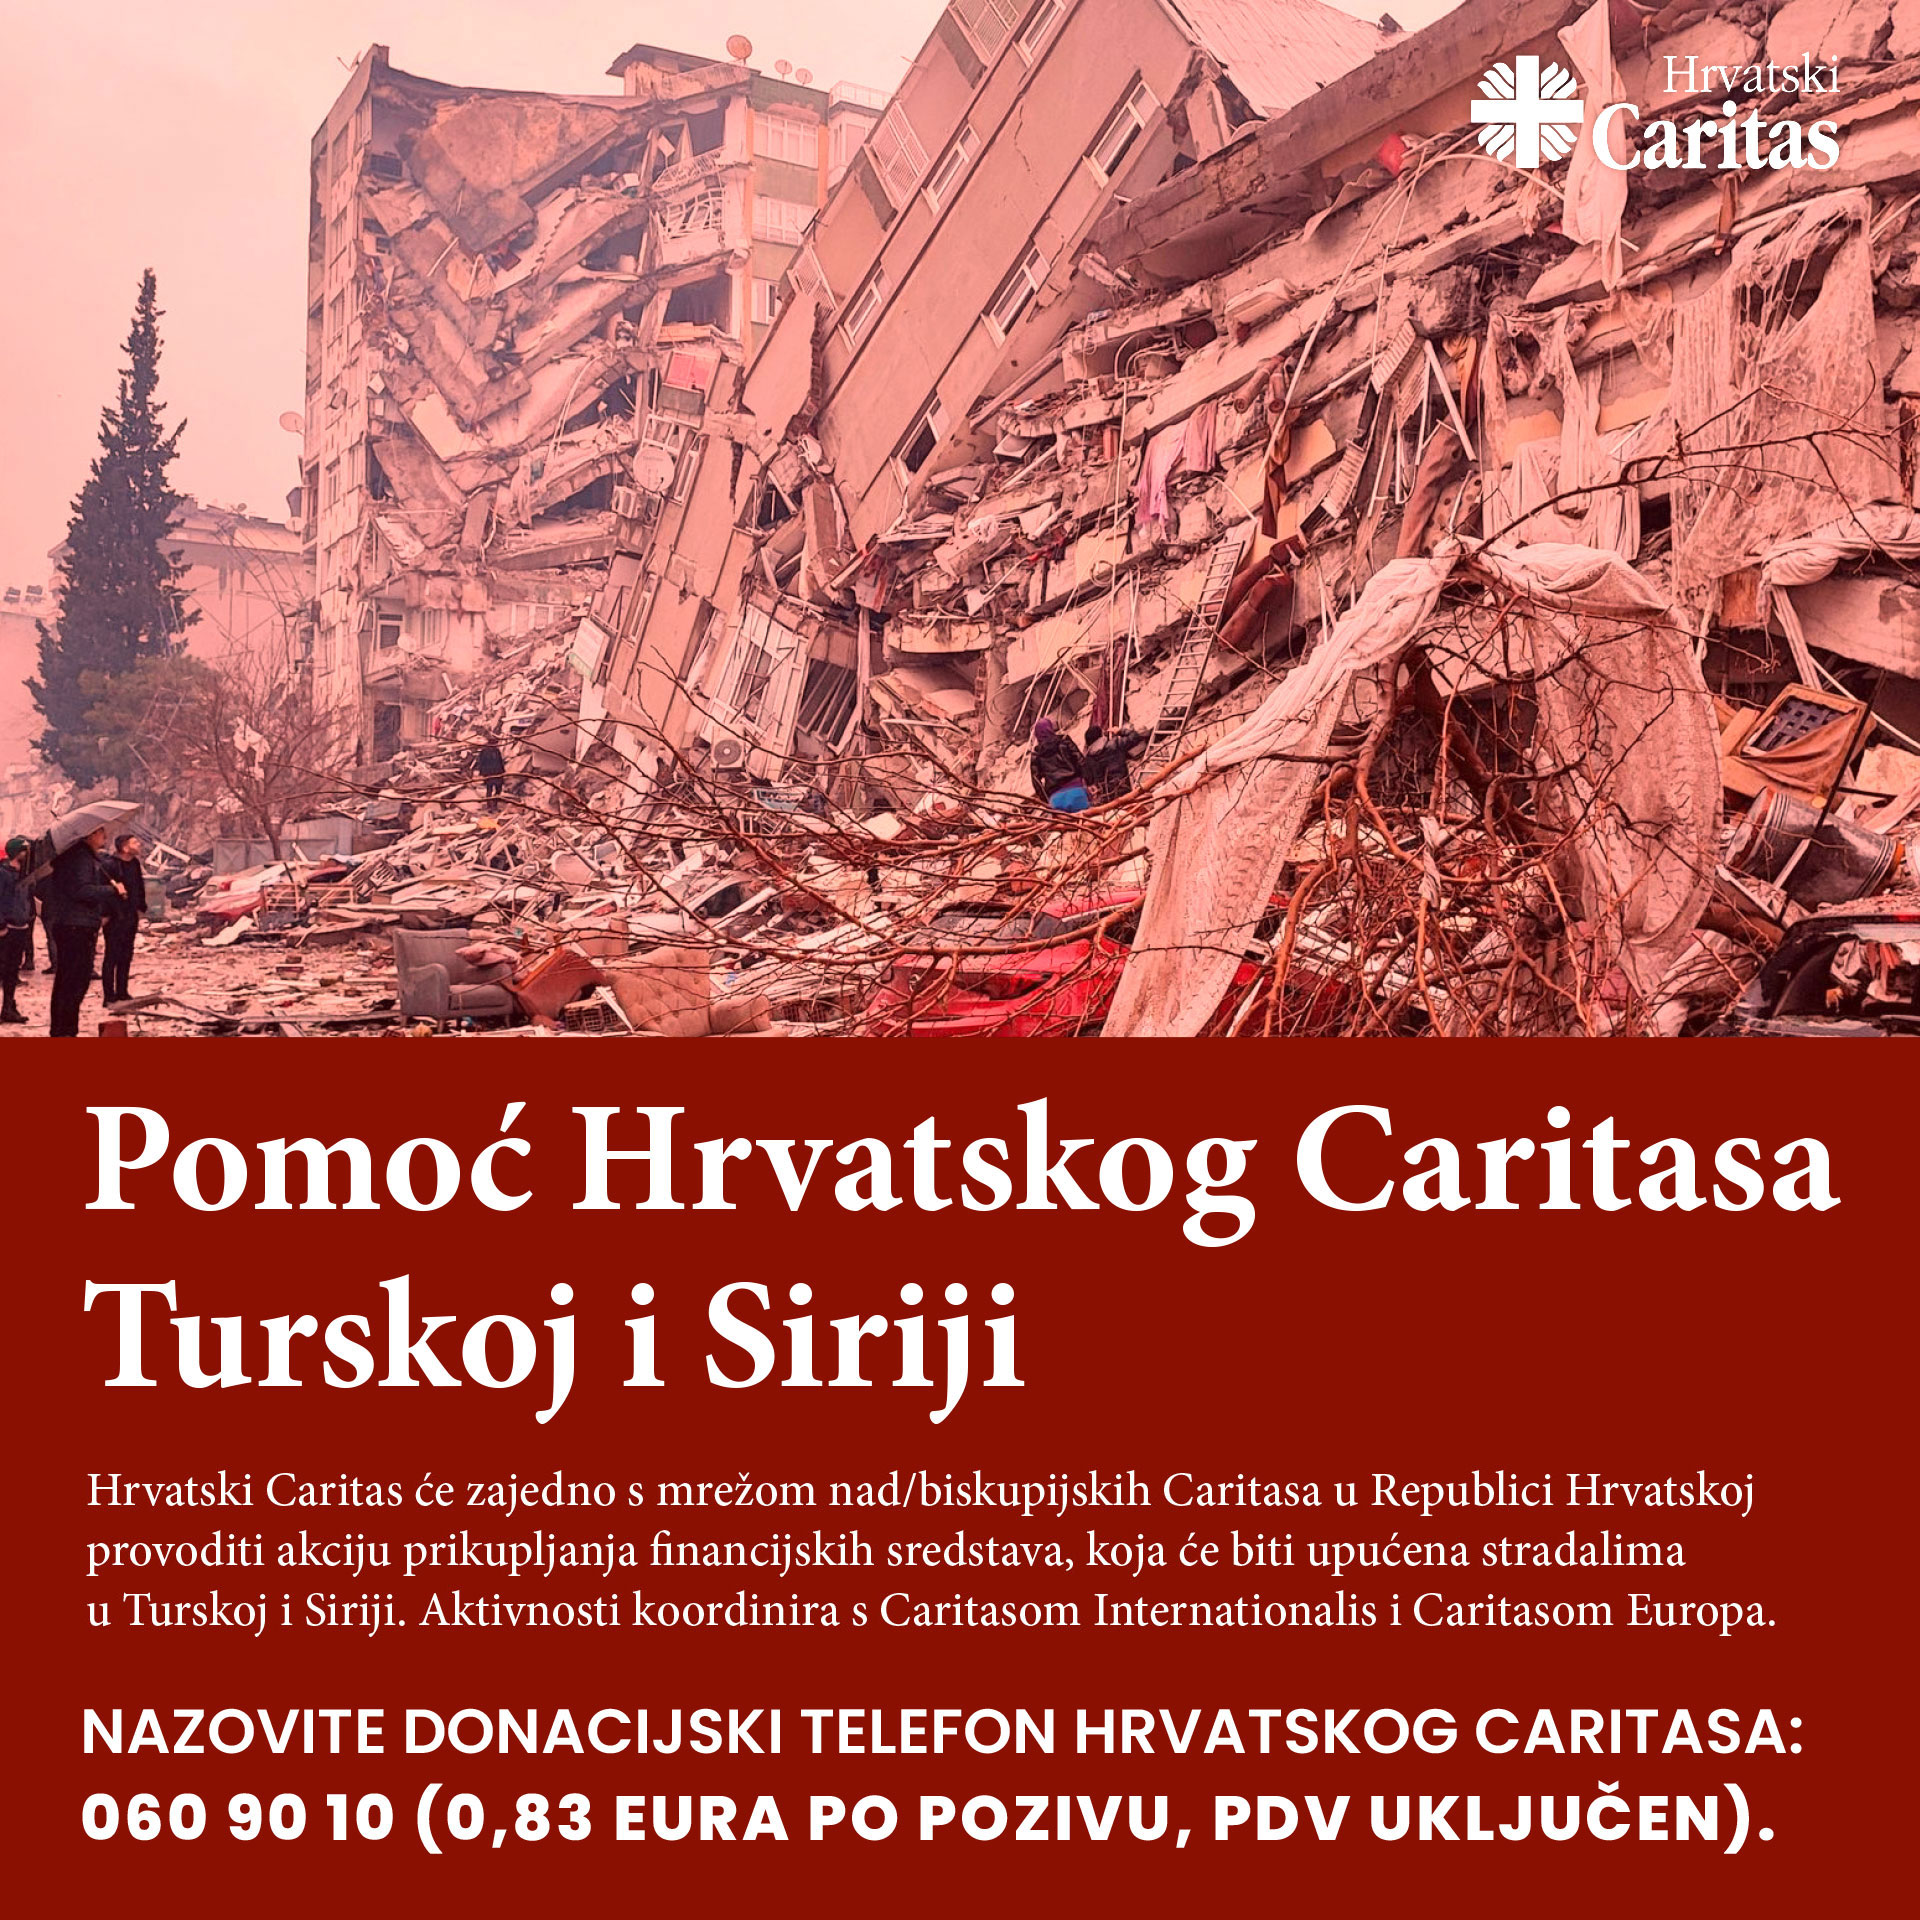 Read more about the article PRIDRUŽITE SE AKCIJI POMOĆI TURSKOJ I SIRIJI, KOJU JE POKRENUO HRVATSKI CARITAS!